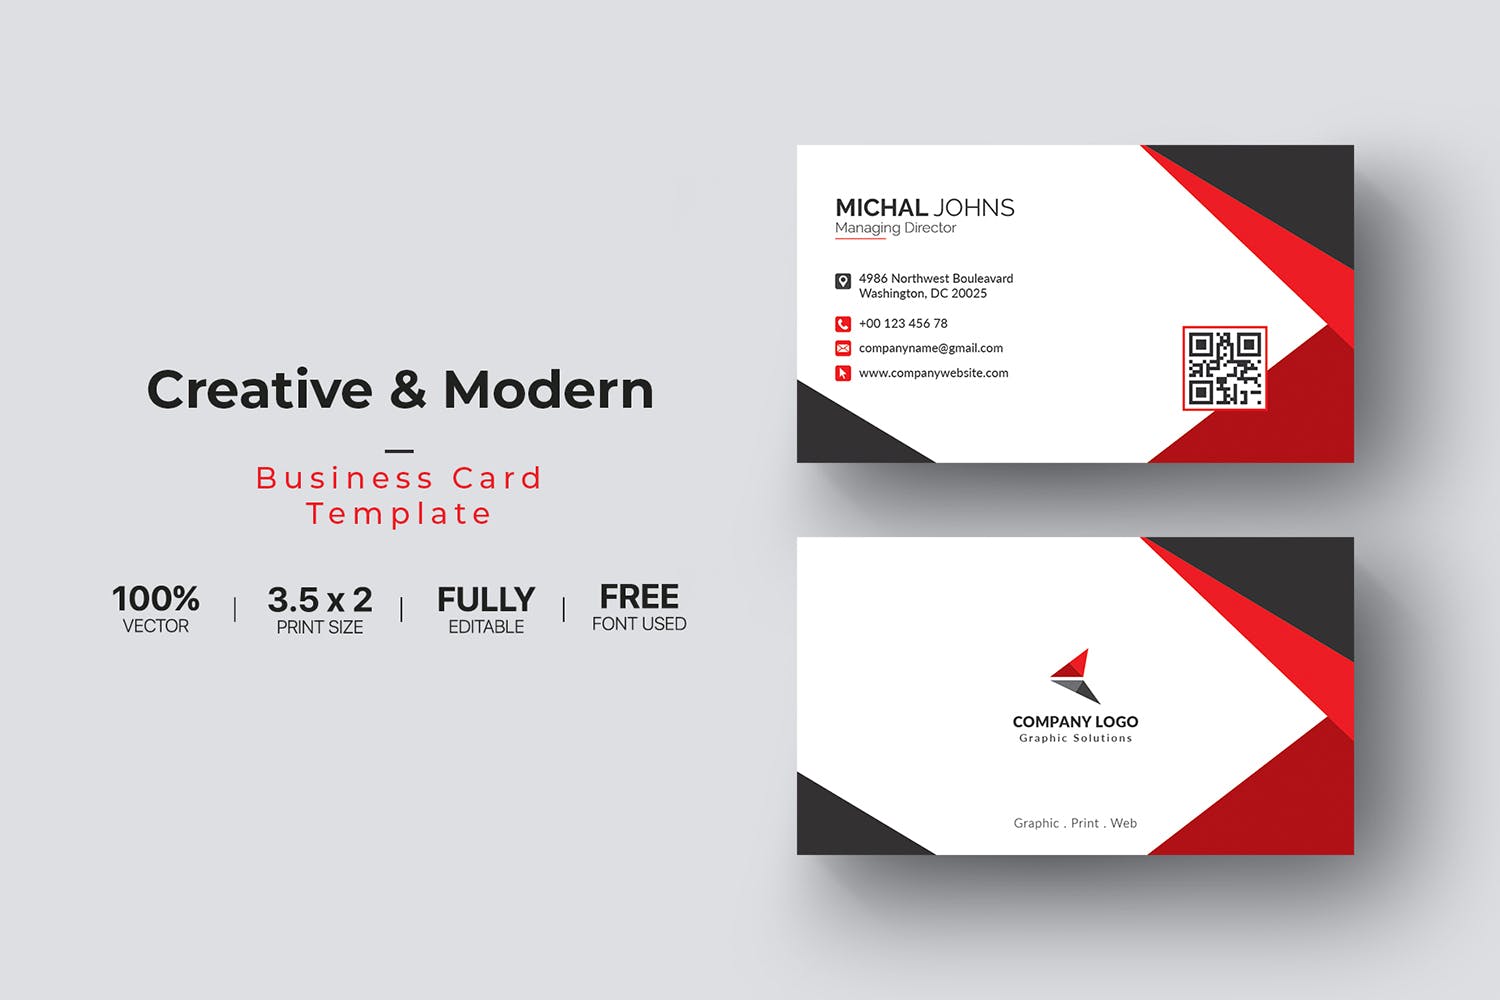 现代创意设计风格企业名片模板 Business Card插图